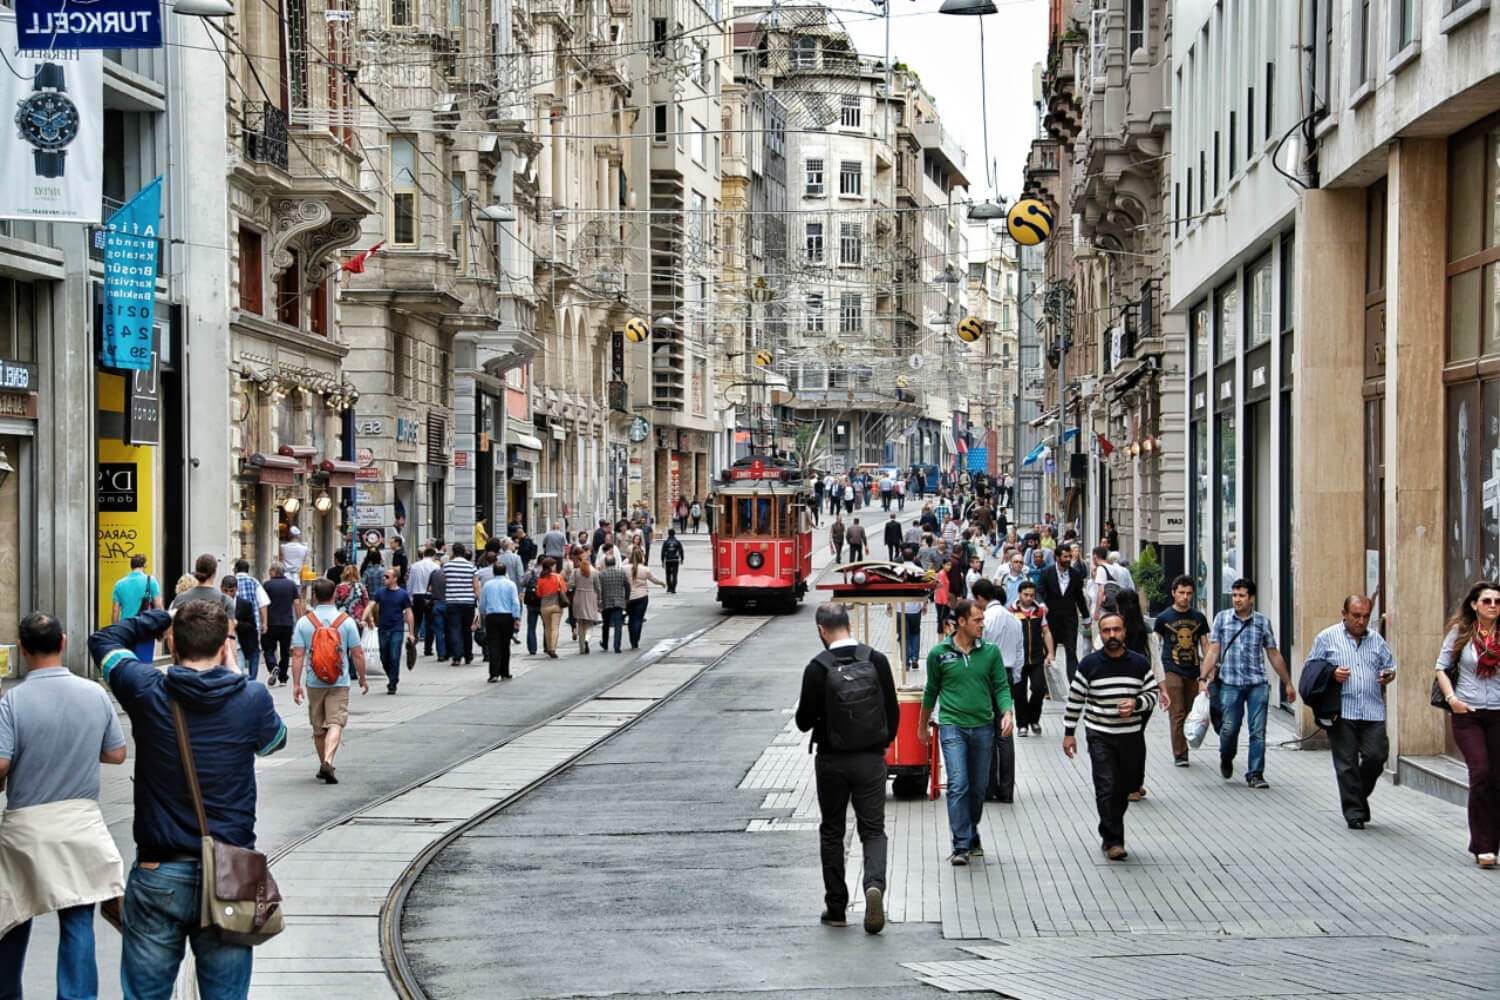 Истикляль. Проспект Истикляль в Стамбуле. Пешеходная улица Стамбула Истикляль. Площадь Таксим и улица Истикляль. Улица Истикляль и Таксим в Стамбуле.